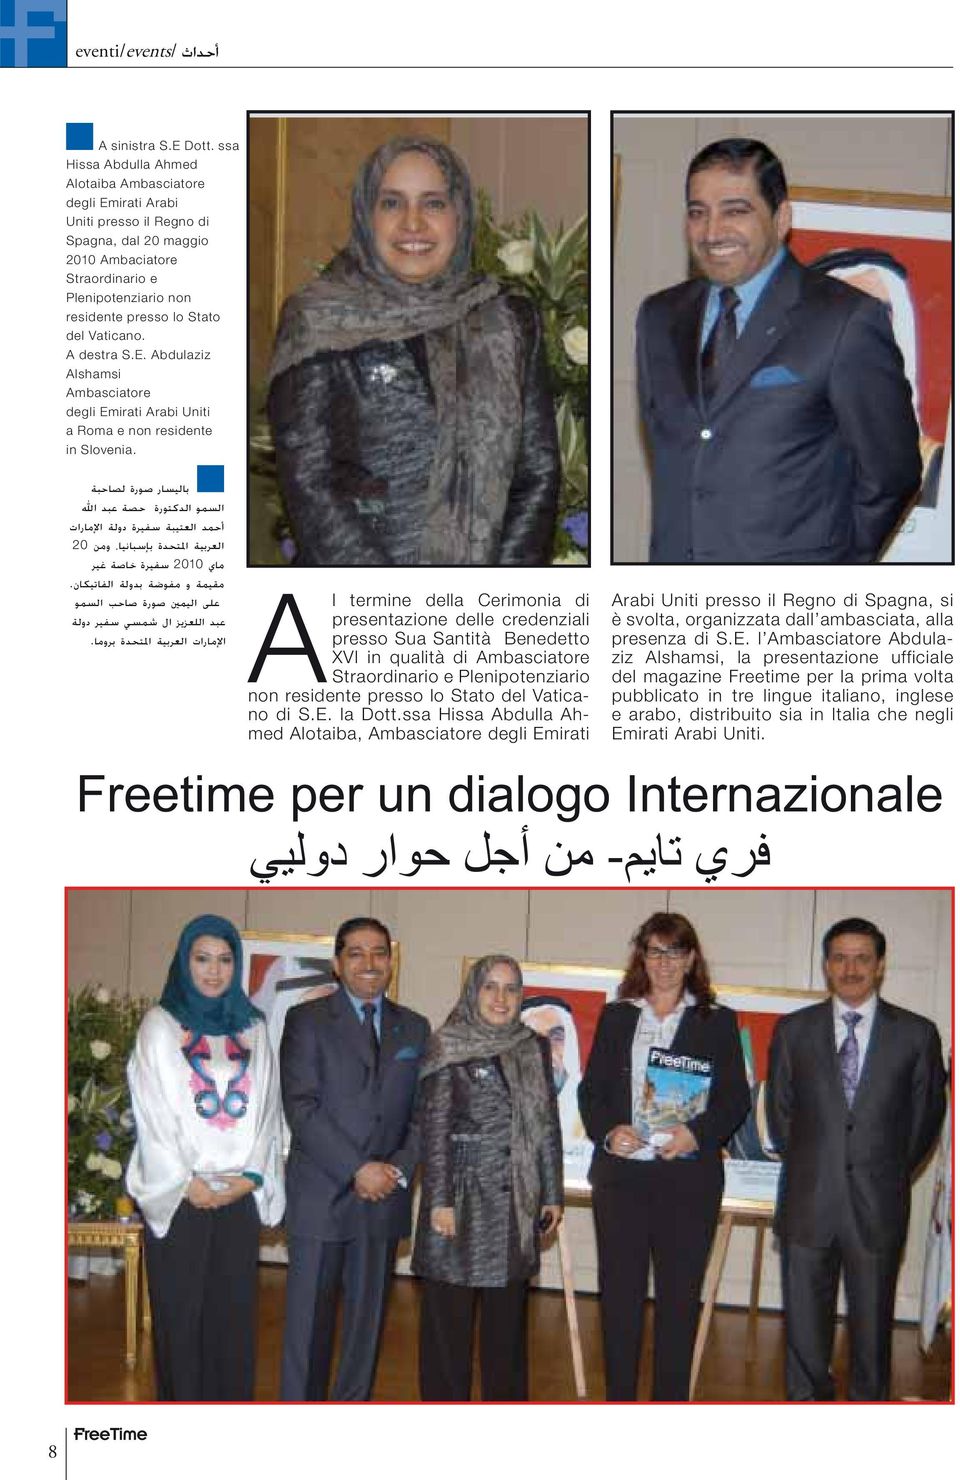 Vaticano. A destra S.E. Abdulaziz Alshamsi Ambasciatore degli Emirati Arabi Uniti a Roma e non residente in Slovenia.